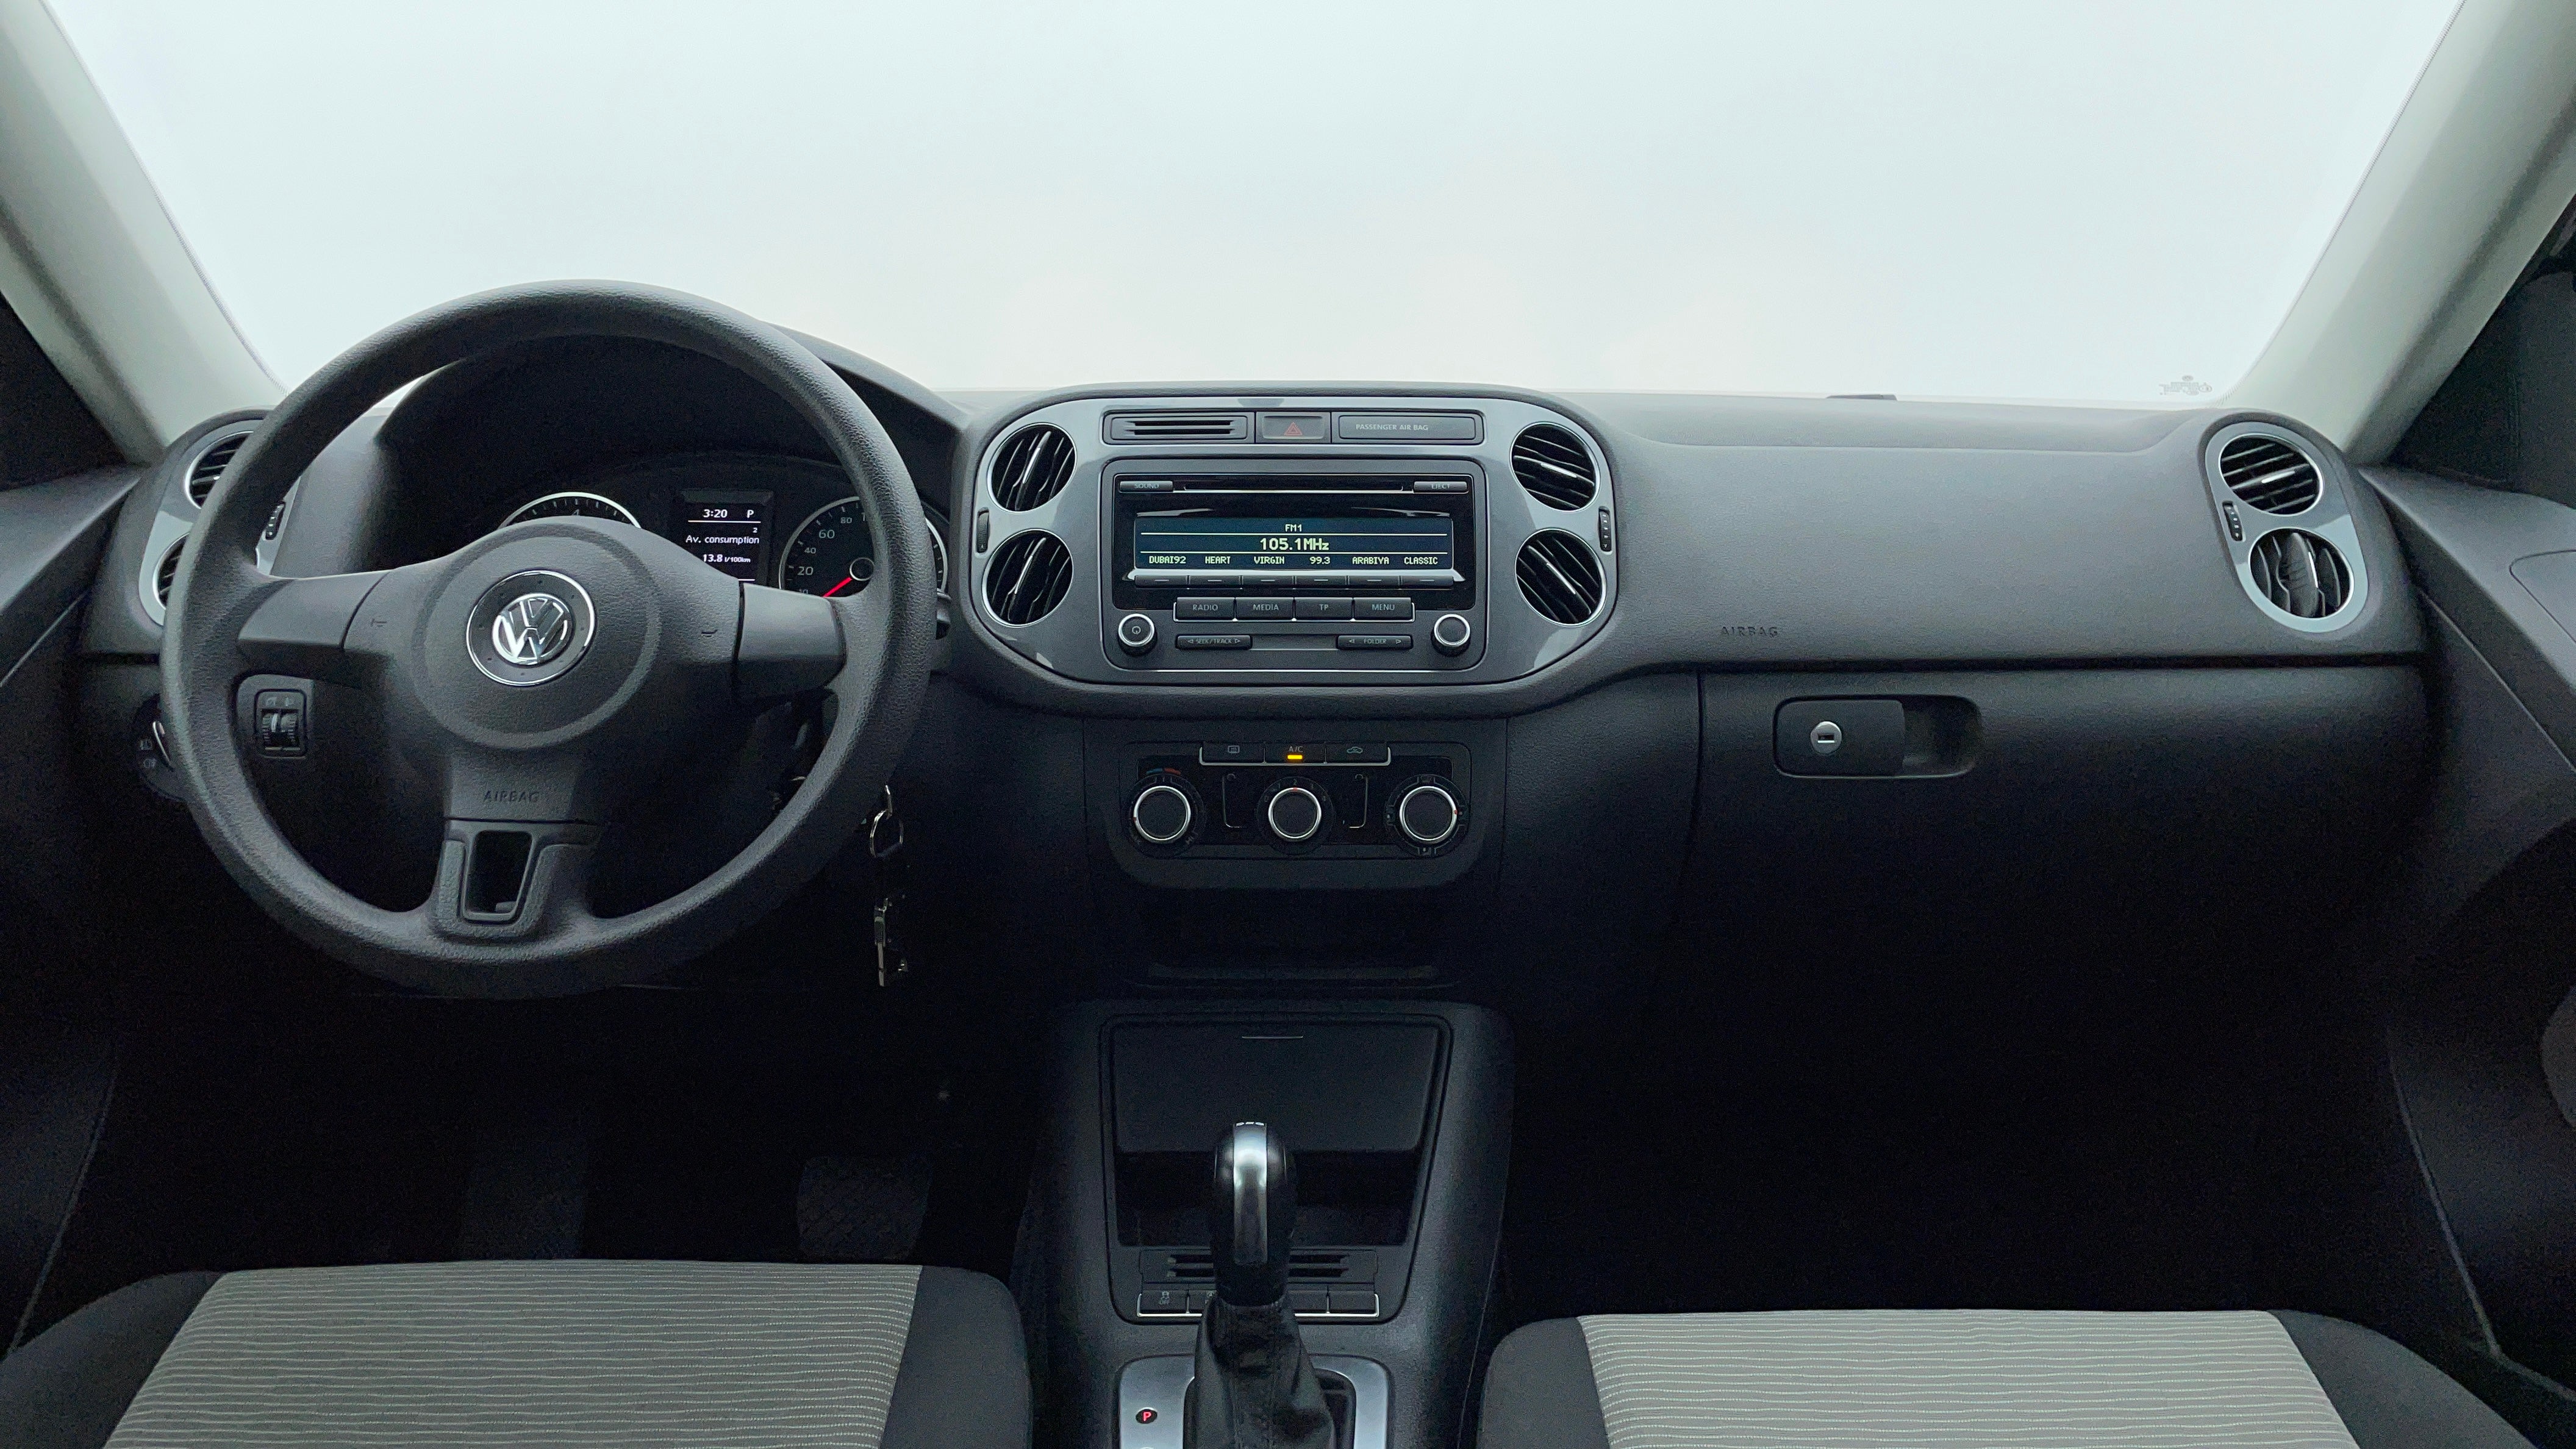 Volkswagen Tiguan-Dashboard View